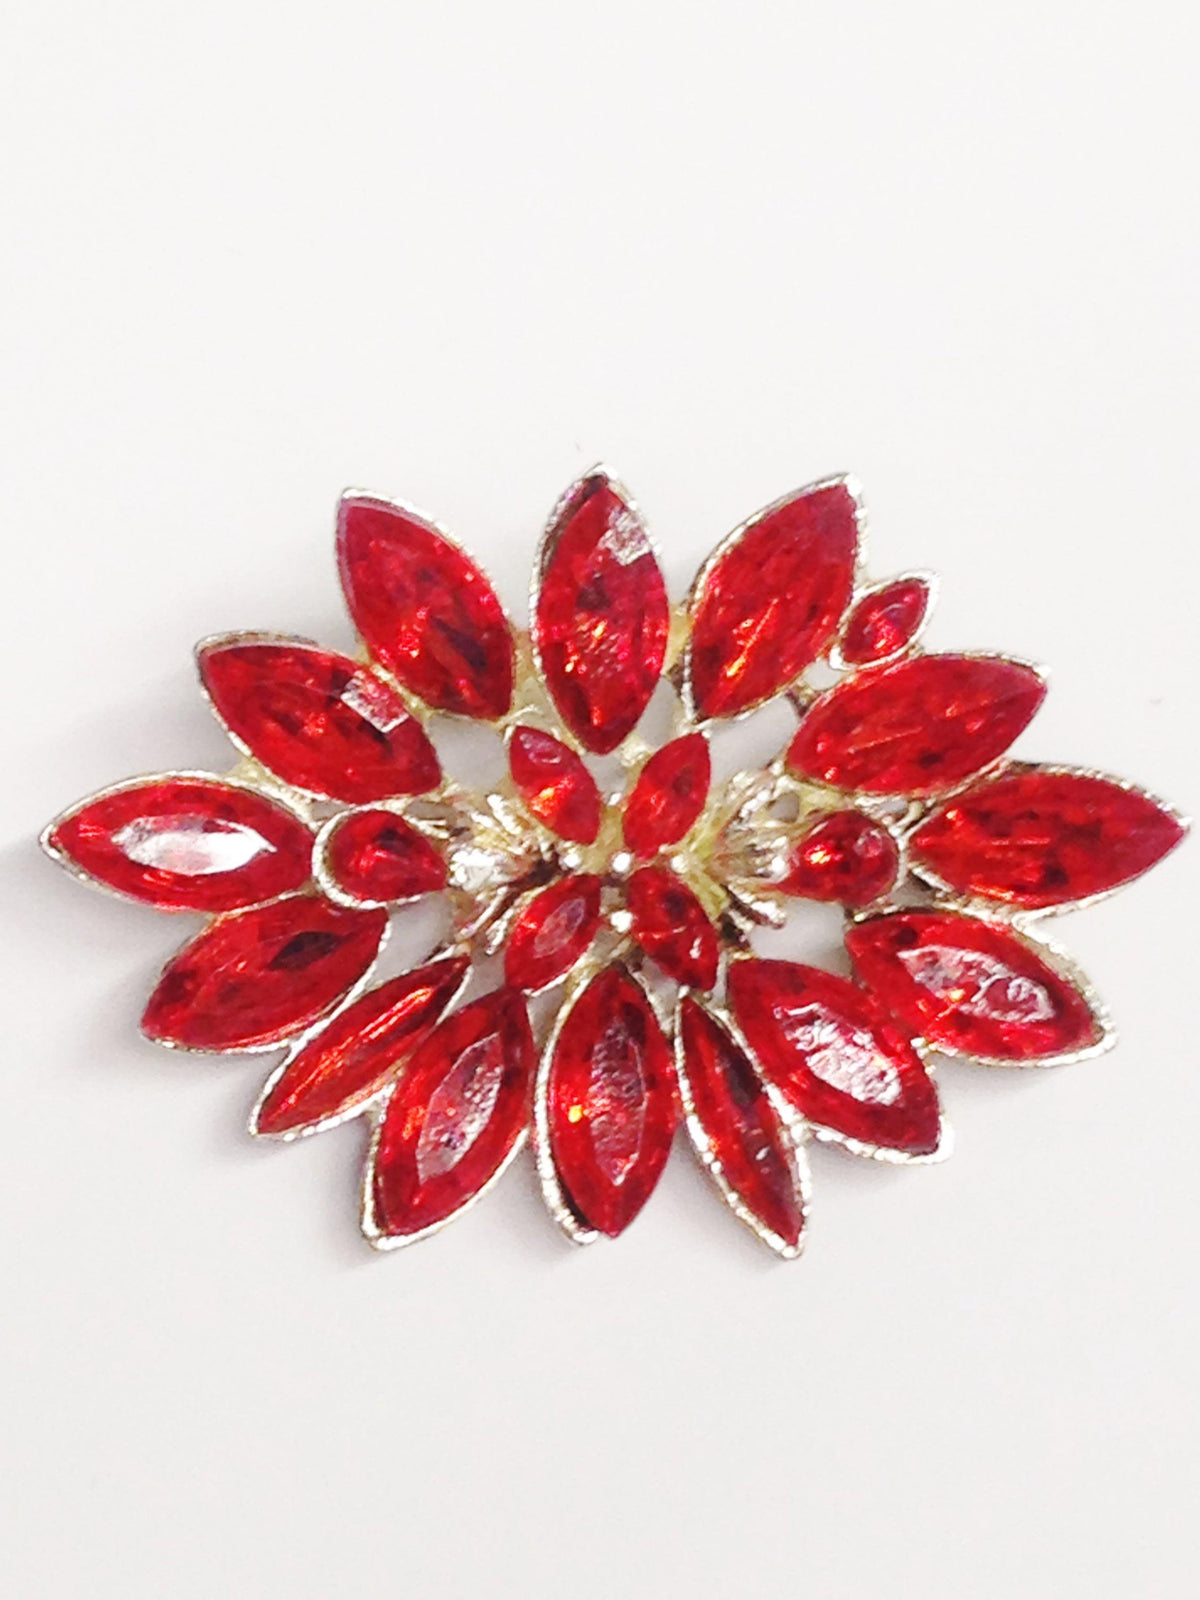 Vintage Blood Orange Flower Brooch Pin - Hers and His Treasures